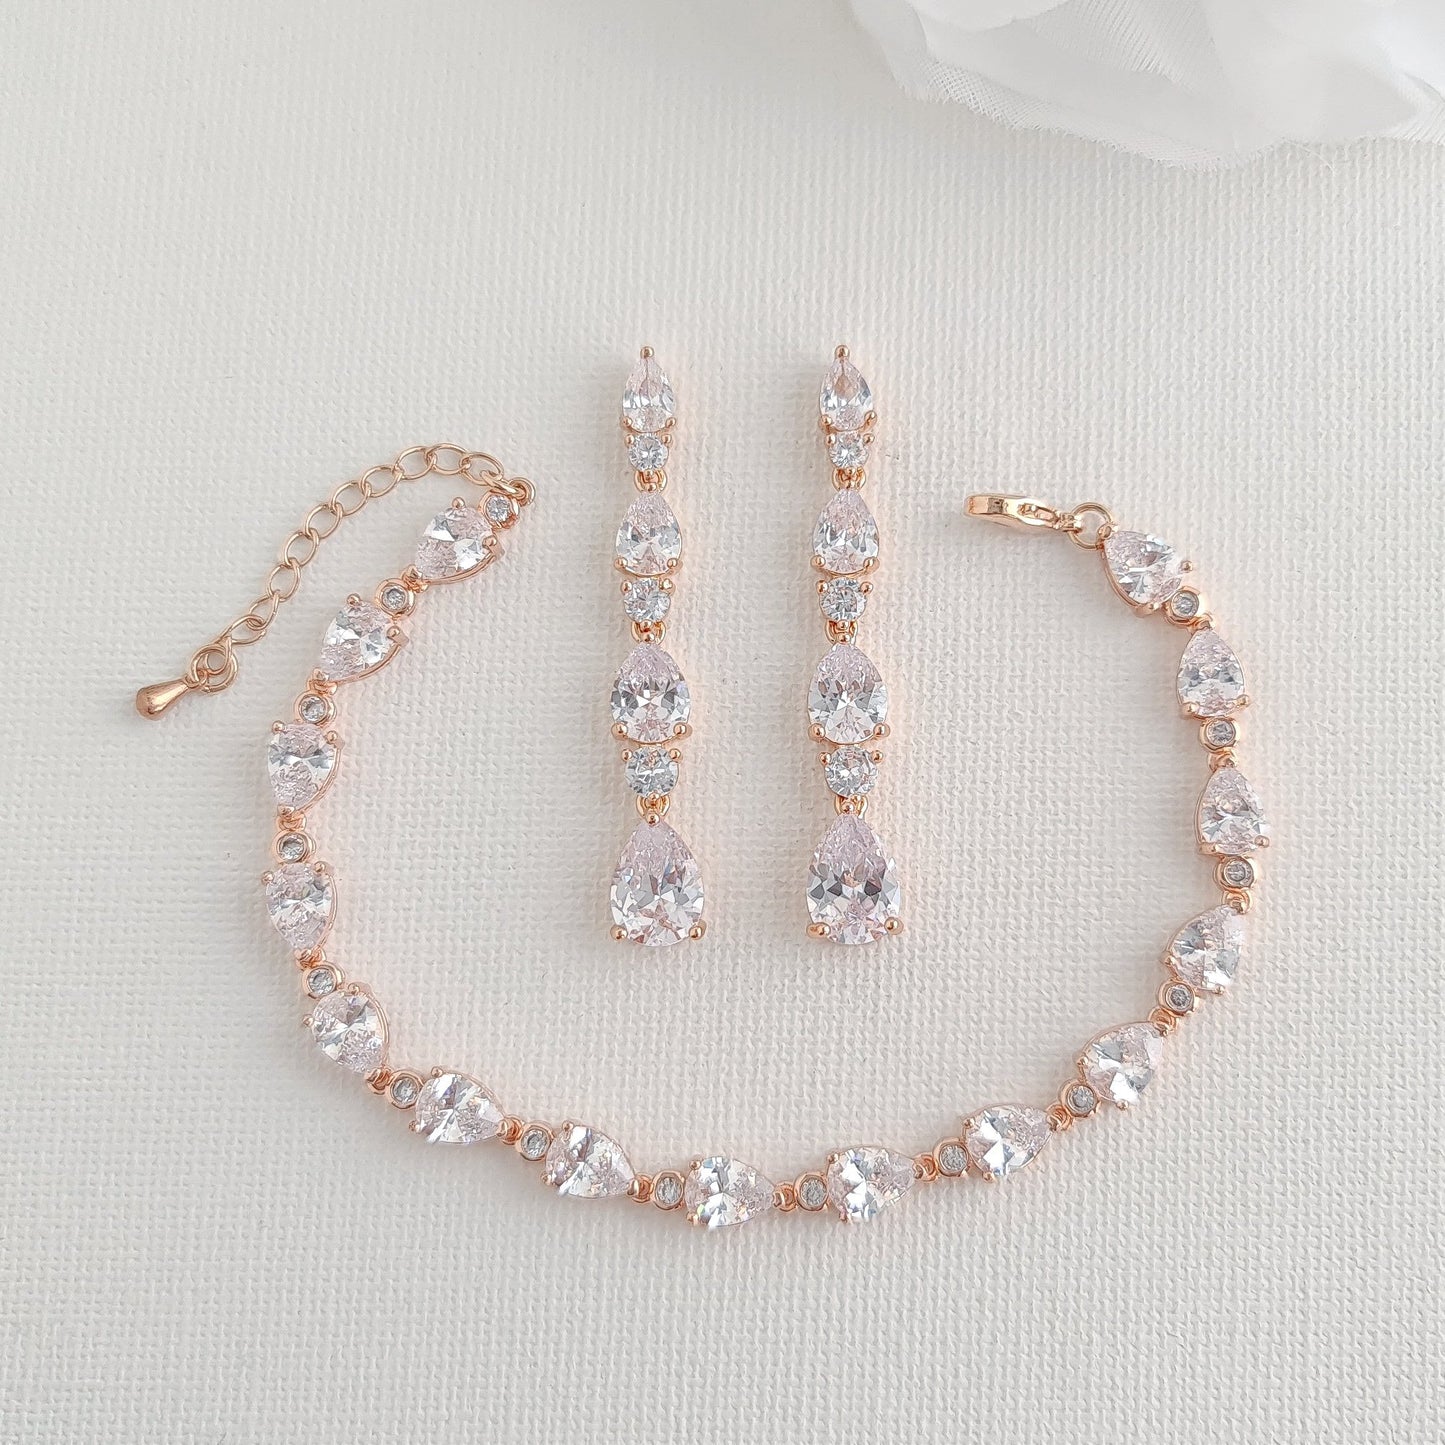 Teardrop Bracelet and Earrings Set for Weddings-Hazel